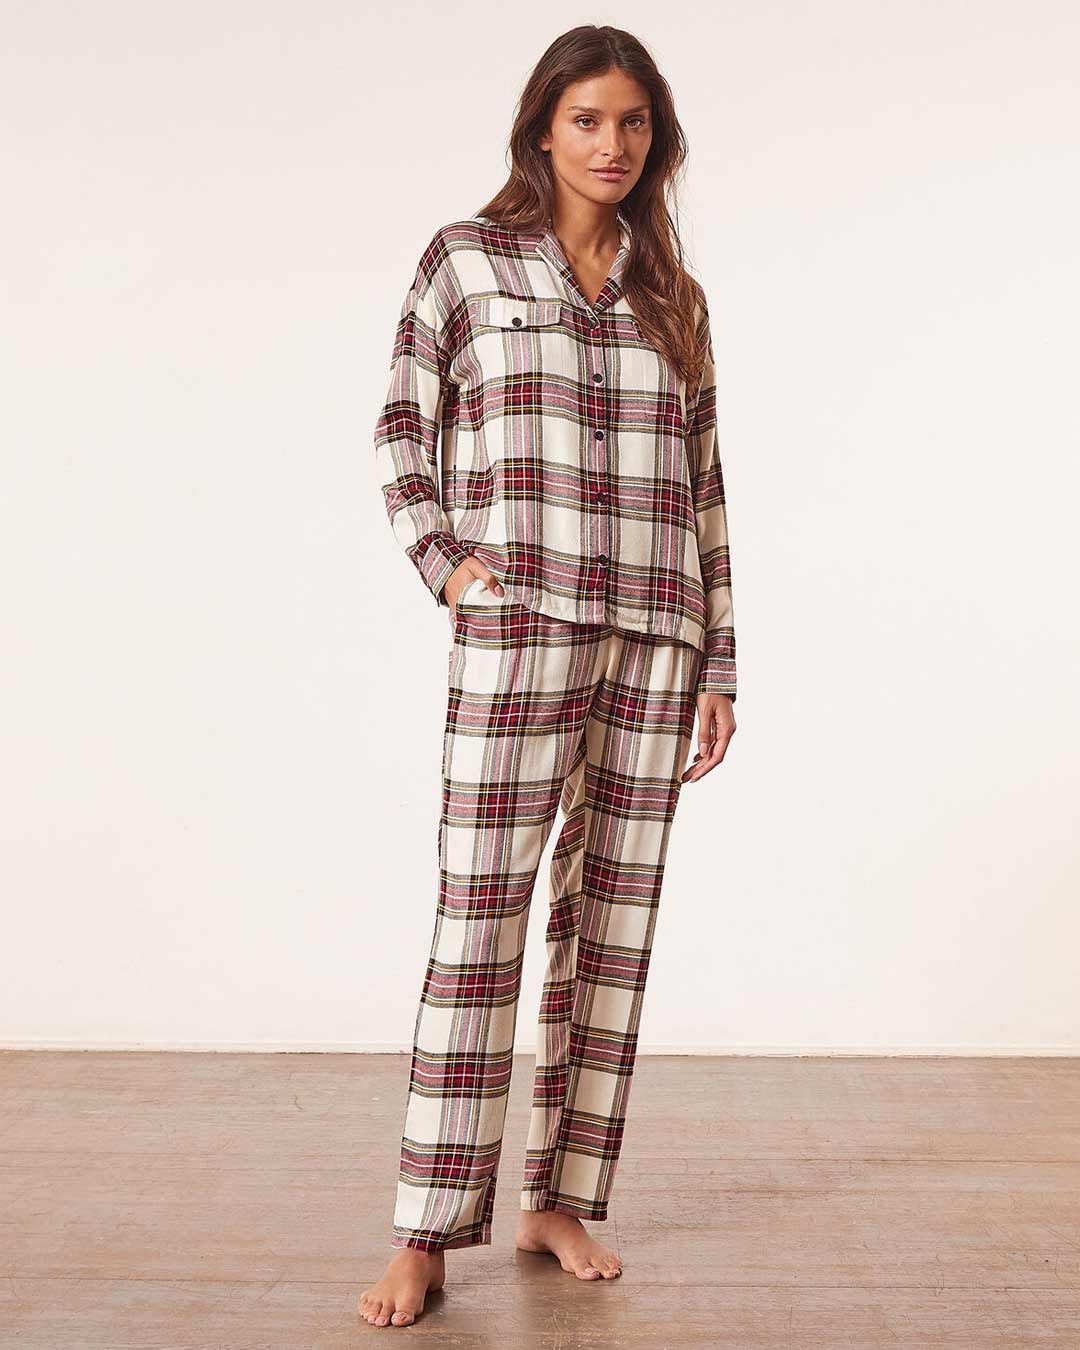 Atrevimiento Intervenir Cumplido 50 pijamas de mujer cómodos, bonitos y tendencia este invierno